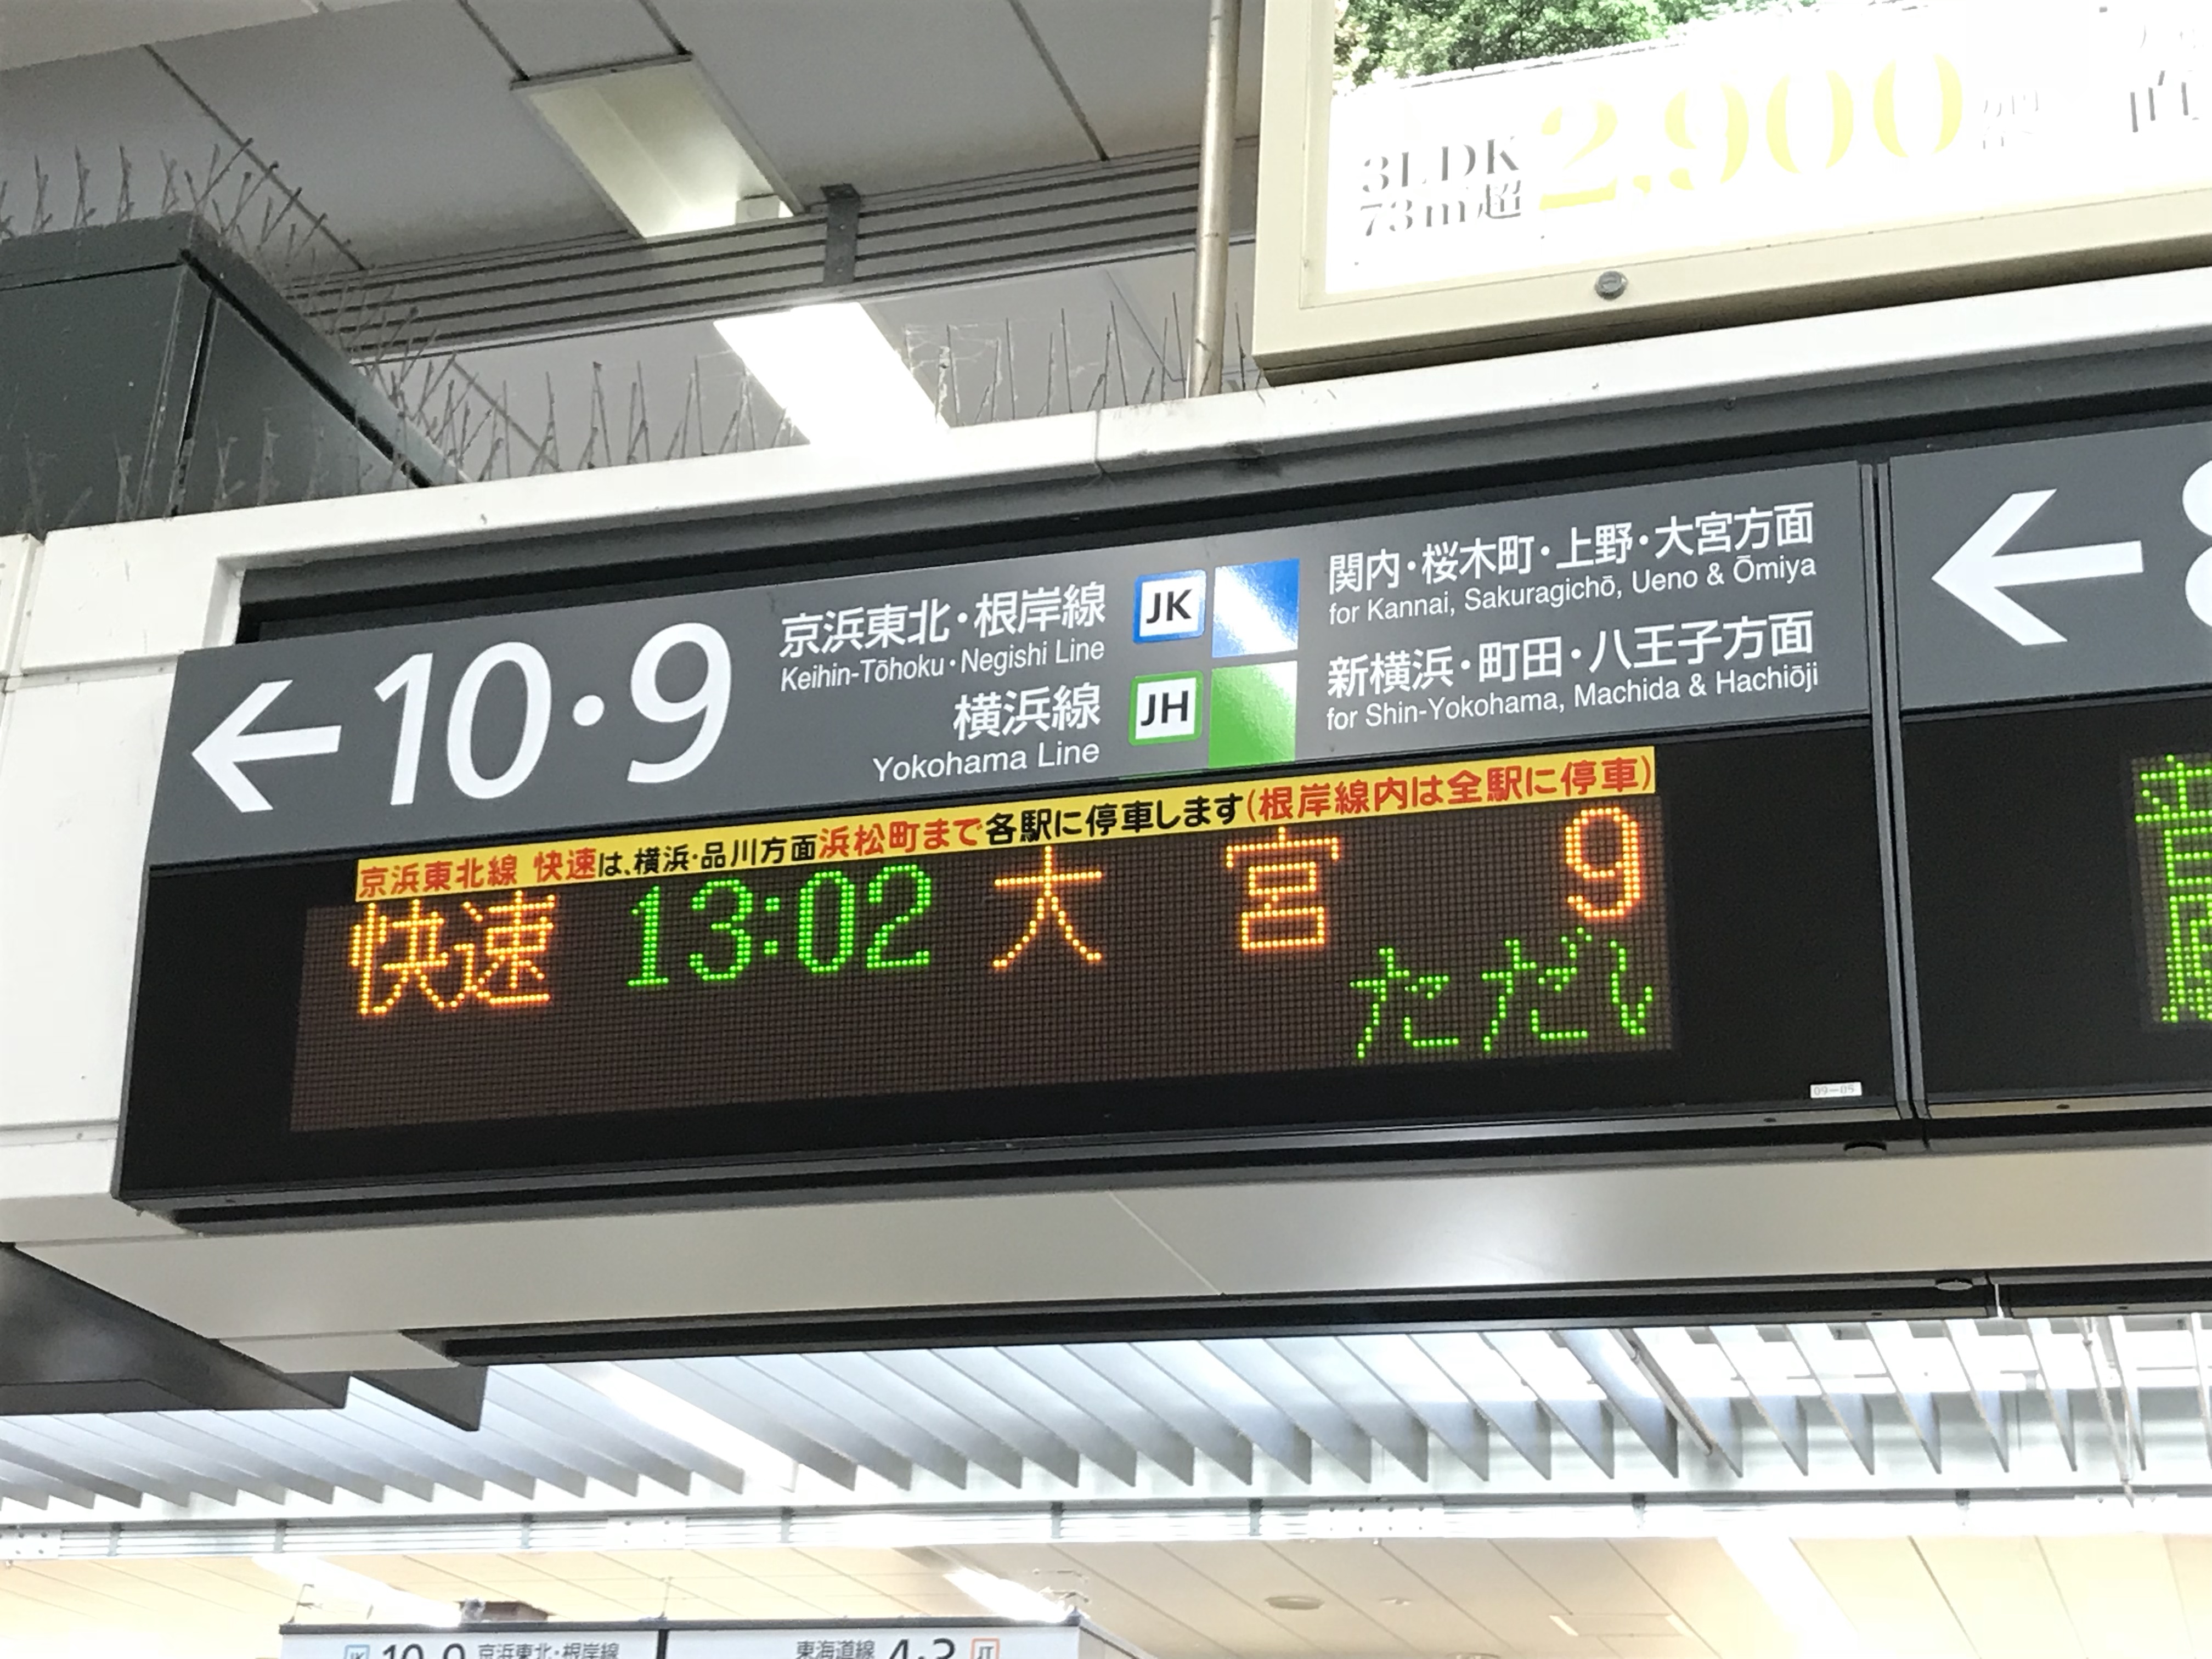 11月16日に山手線 京浜東北線は品川駅線路切替工事のため 一部区間で運休します 振替輸送 運行計画はこちら 東海道線沿線のそうくんの旅行記